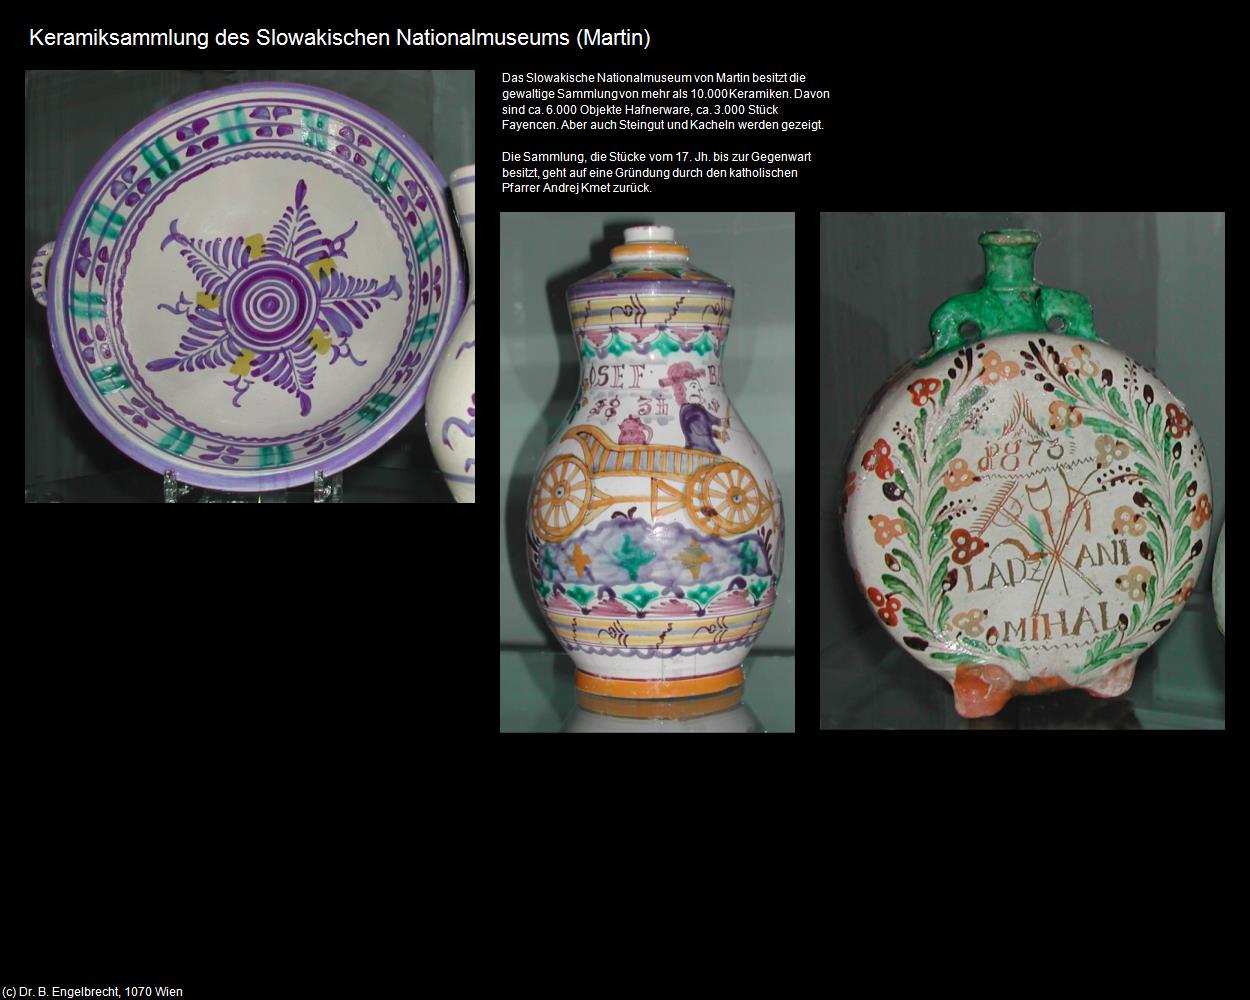 Keramiksammlung (Martin|Sankt Martin) in SLOWAKEI